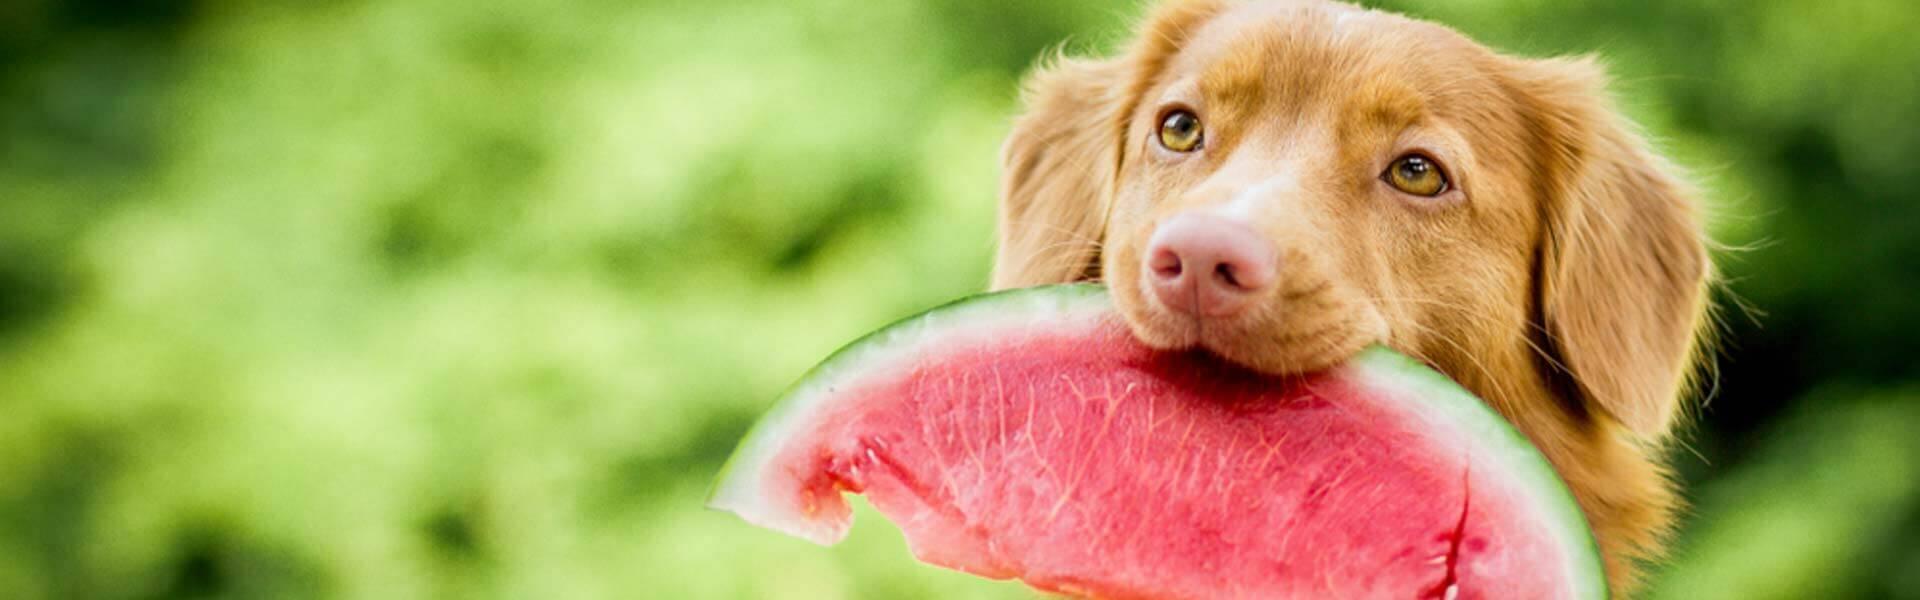 Imagination ozon Pastor Hvilke frugter og grøntsager kan din hund tåle?